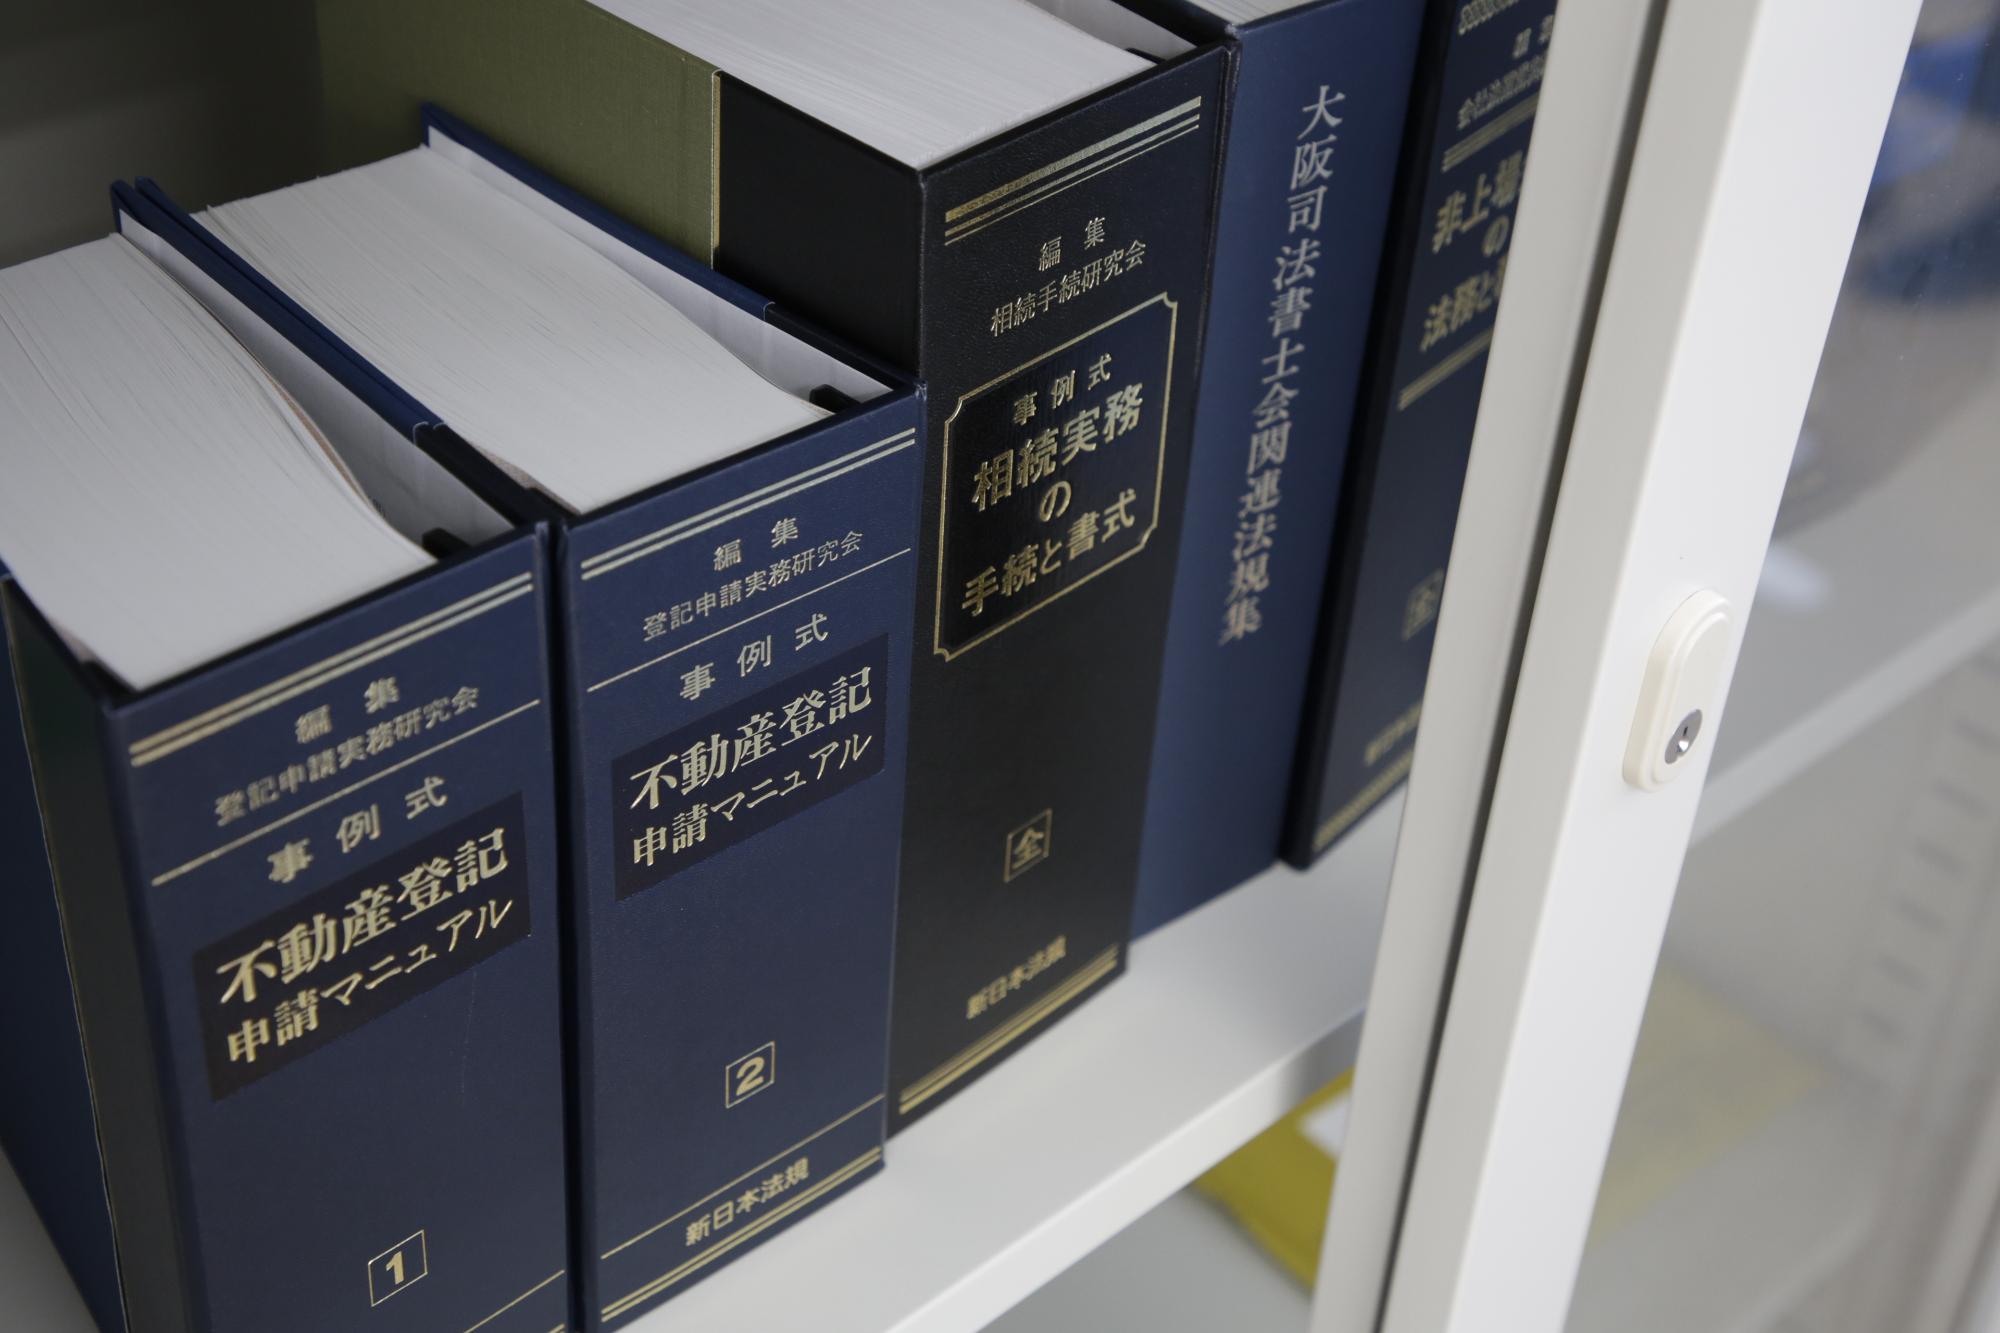 不動産登記申請マニュアルなど、司法書士の仕事に必要な本が棚に並んでいる様子を写した写真。